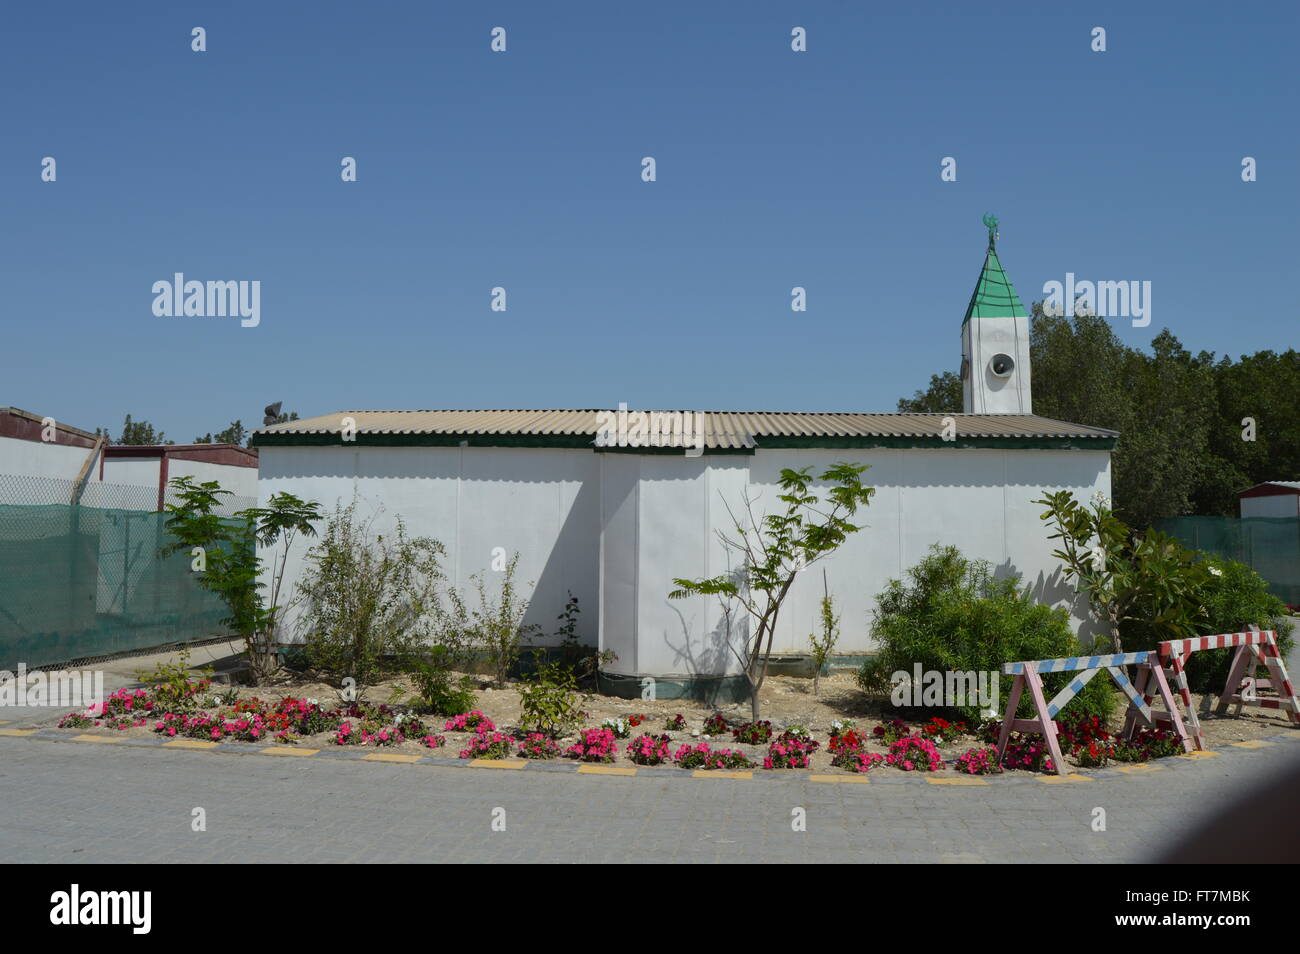 Moschee, Garten, Fench, grüner Baum, Dach Stockfoto